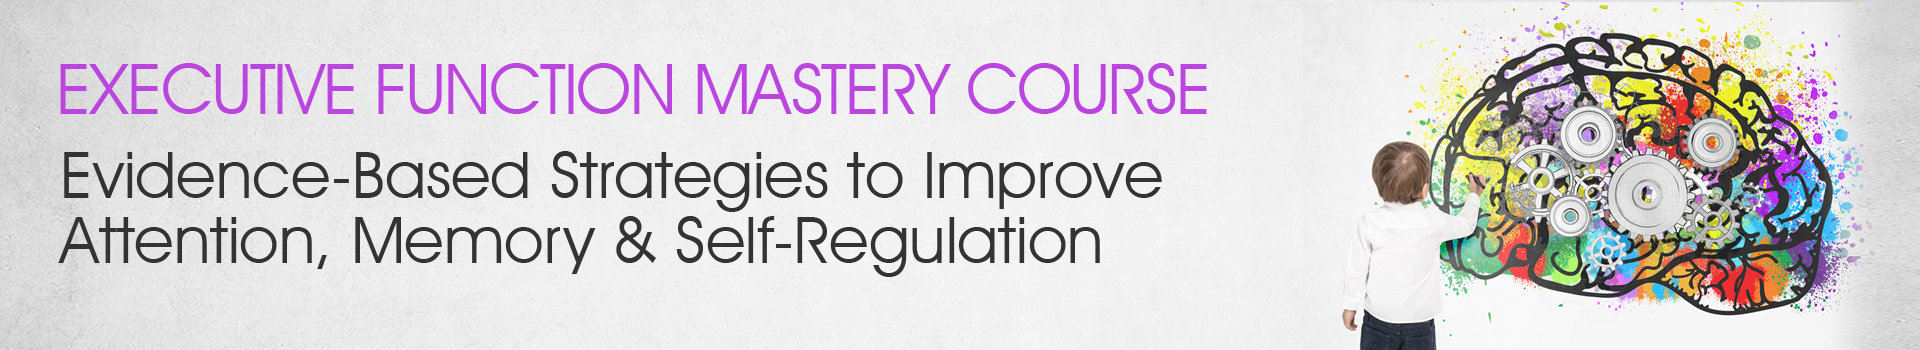 Executive Function Mastery Course